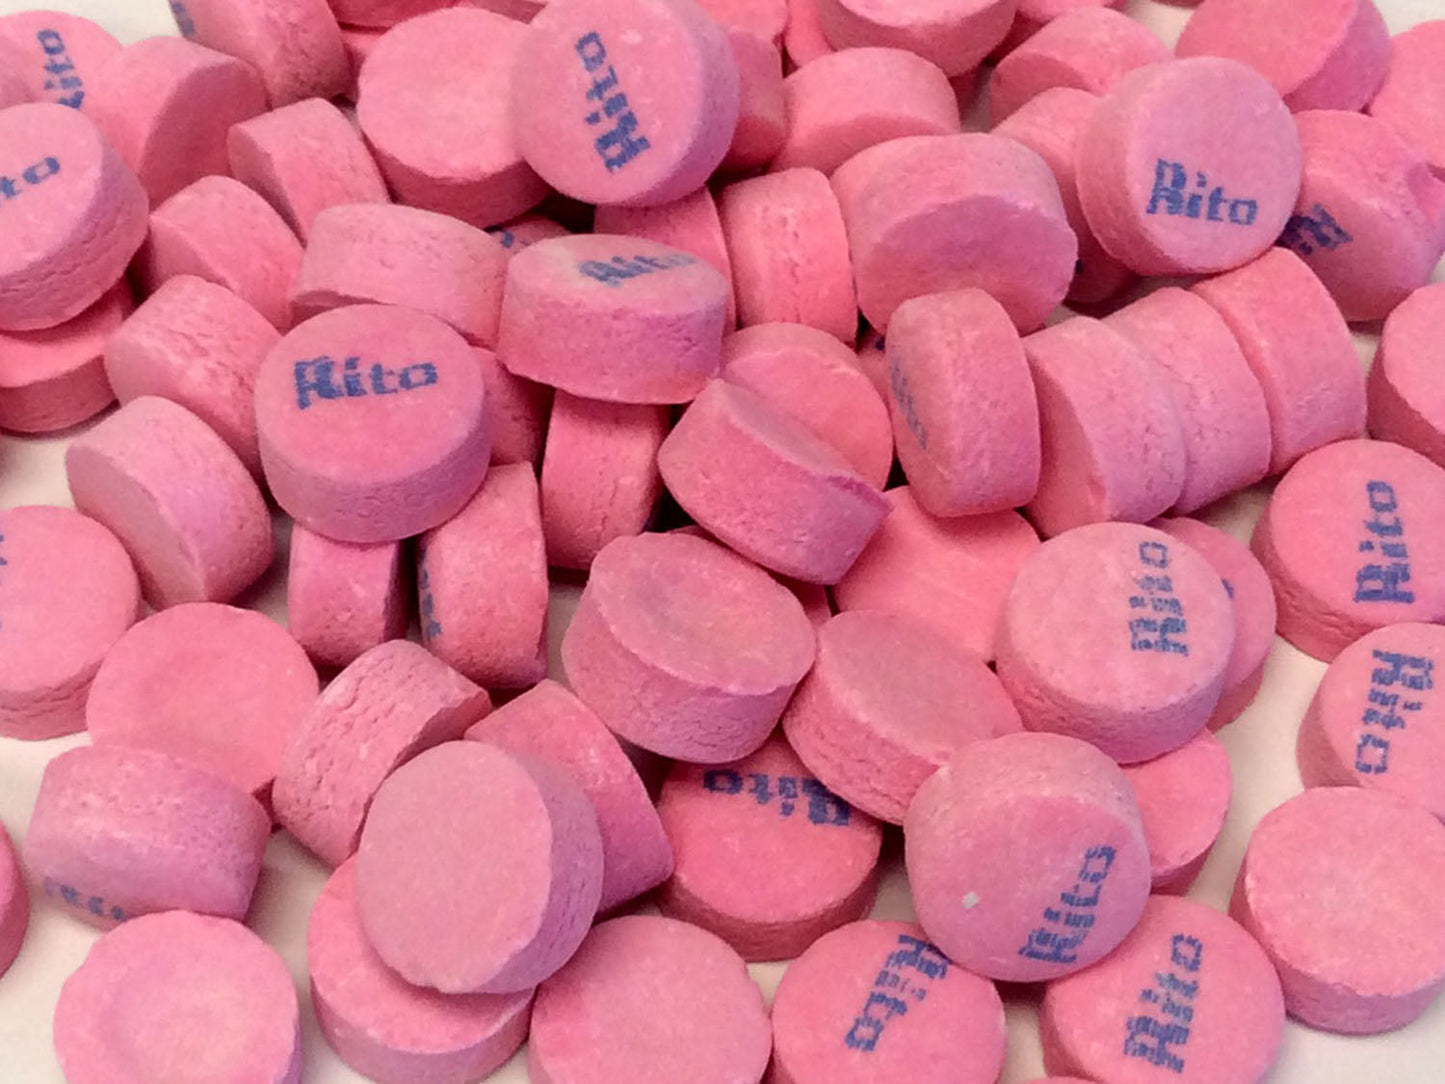 Rito Mints - Wintergreen (pink) - Bulk 3 lb bag (461 ct)